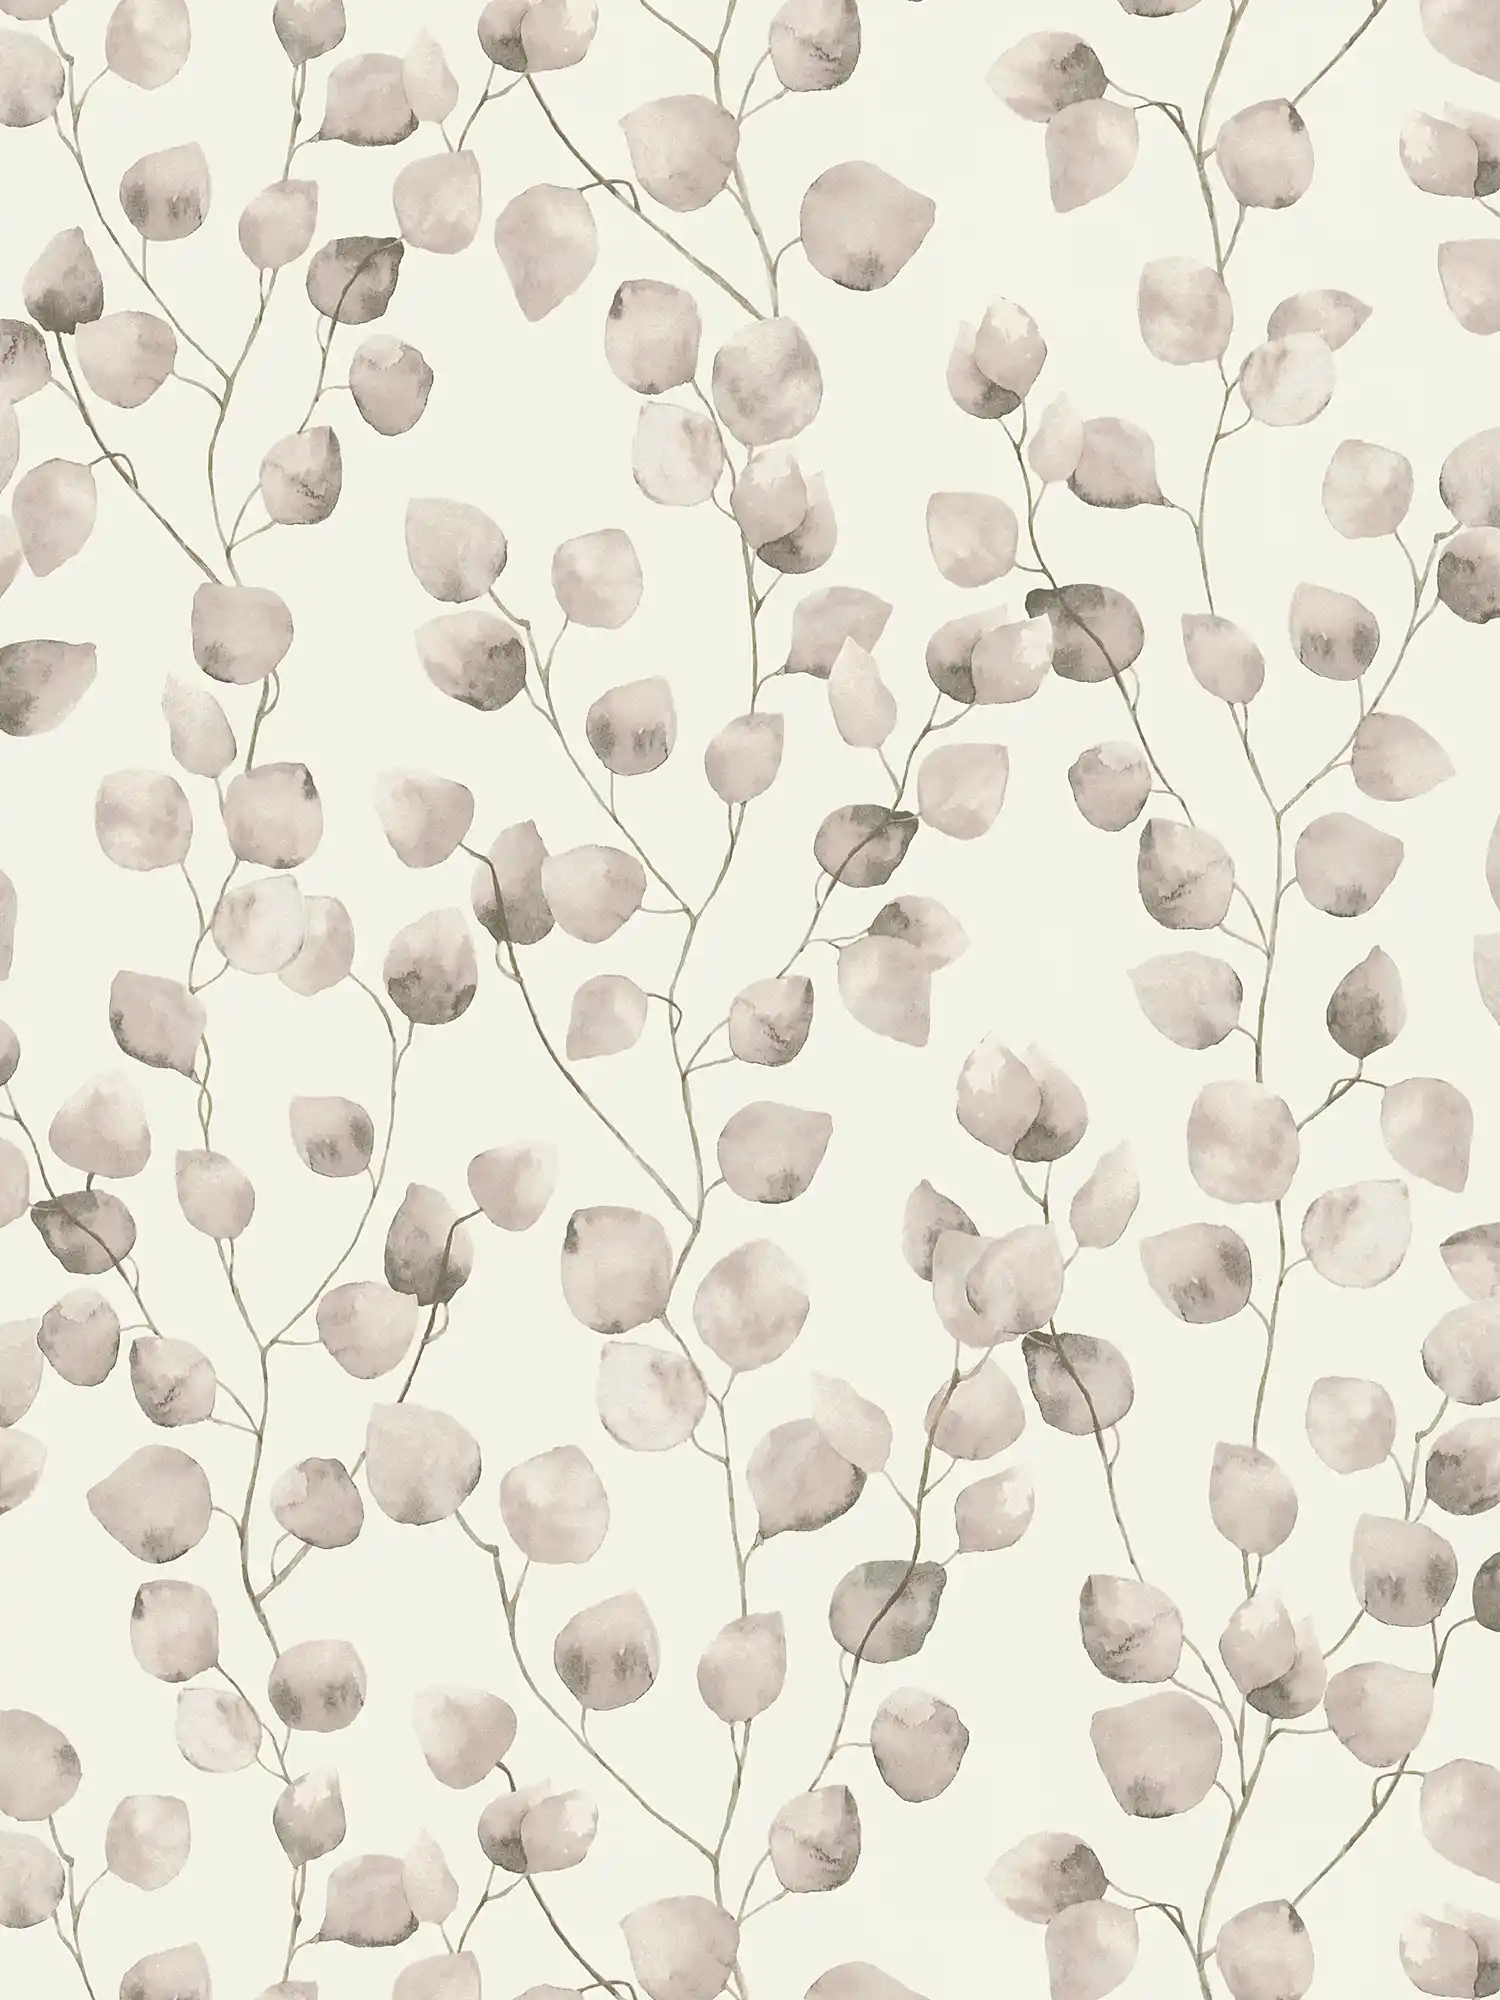 Watercolour style leafy vines wallpaper - beige, cream, white
